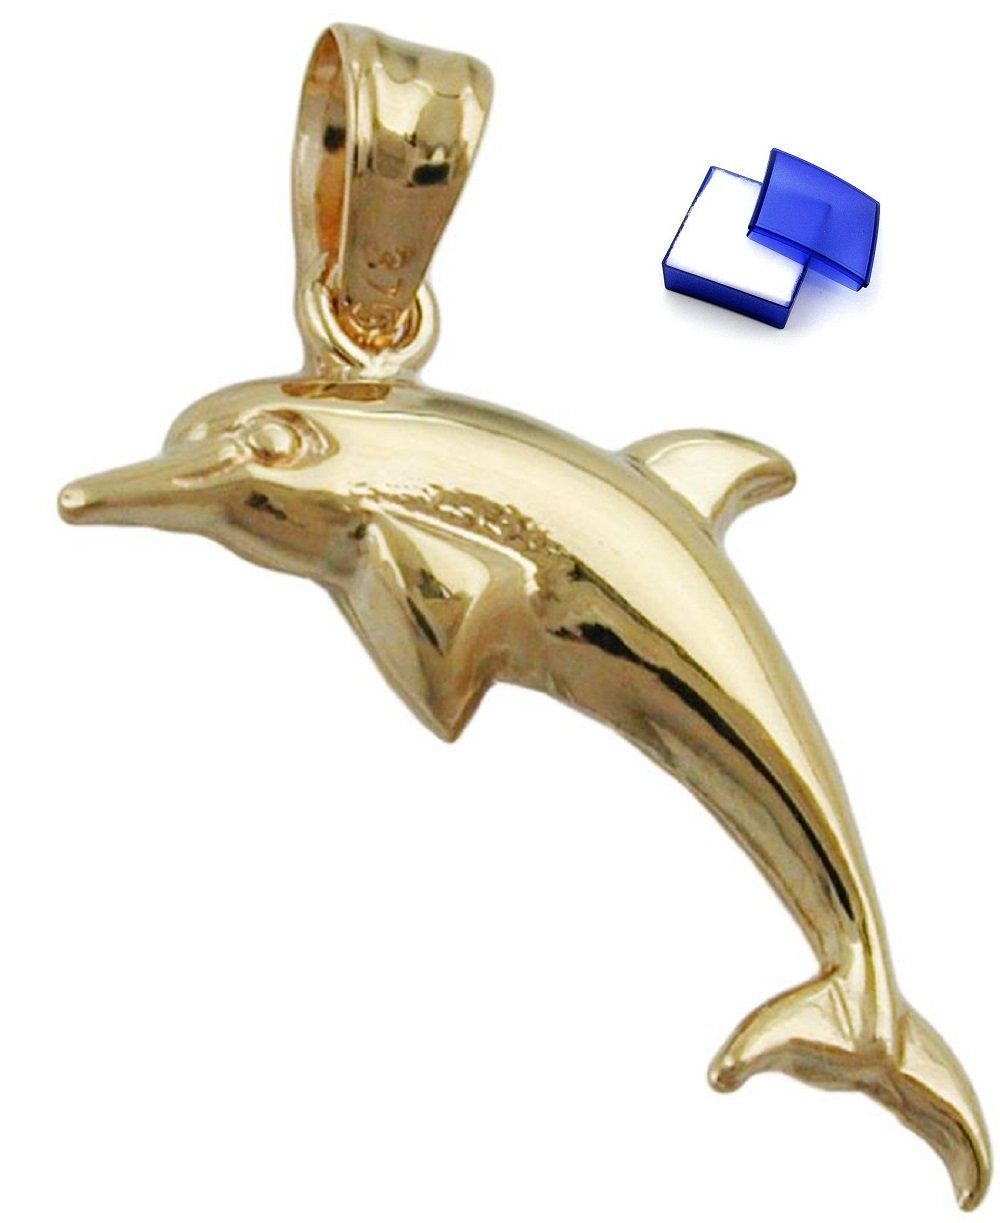 Damen Schmuck unbespielt Kettenanhänger Kettenanhänger Anhänger Delfin glänzend aus 375 Gold 9 Karat 18 x 8 mm inklusive Schmuck